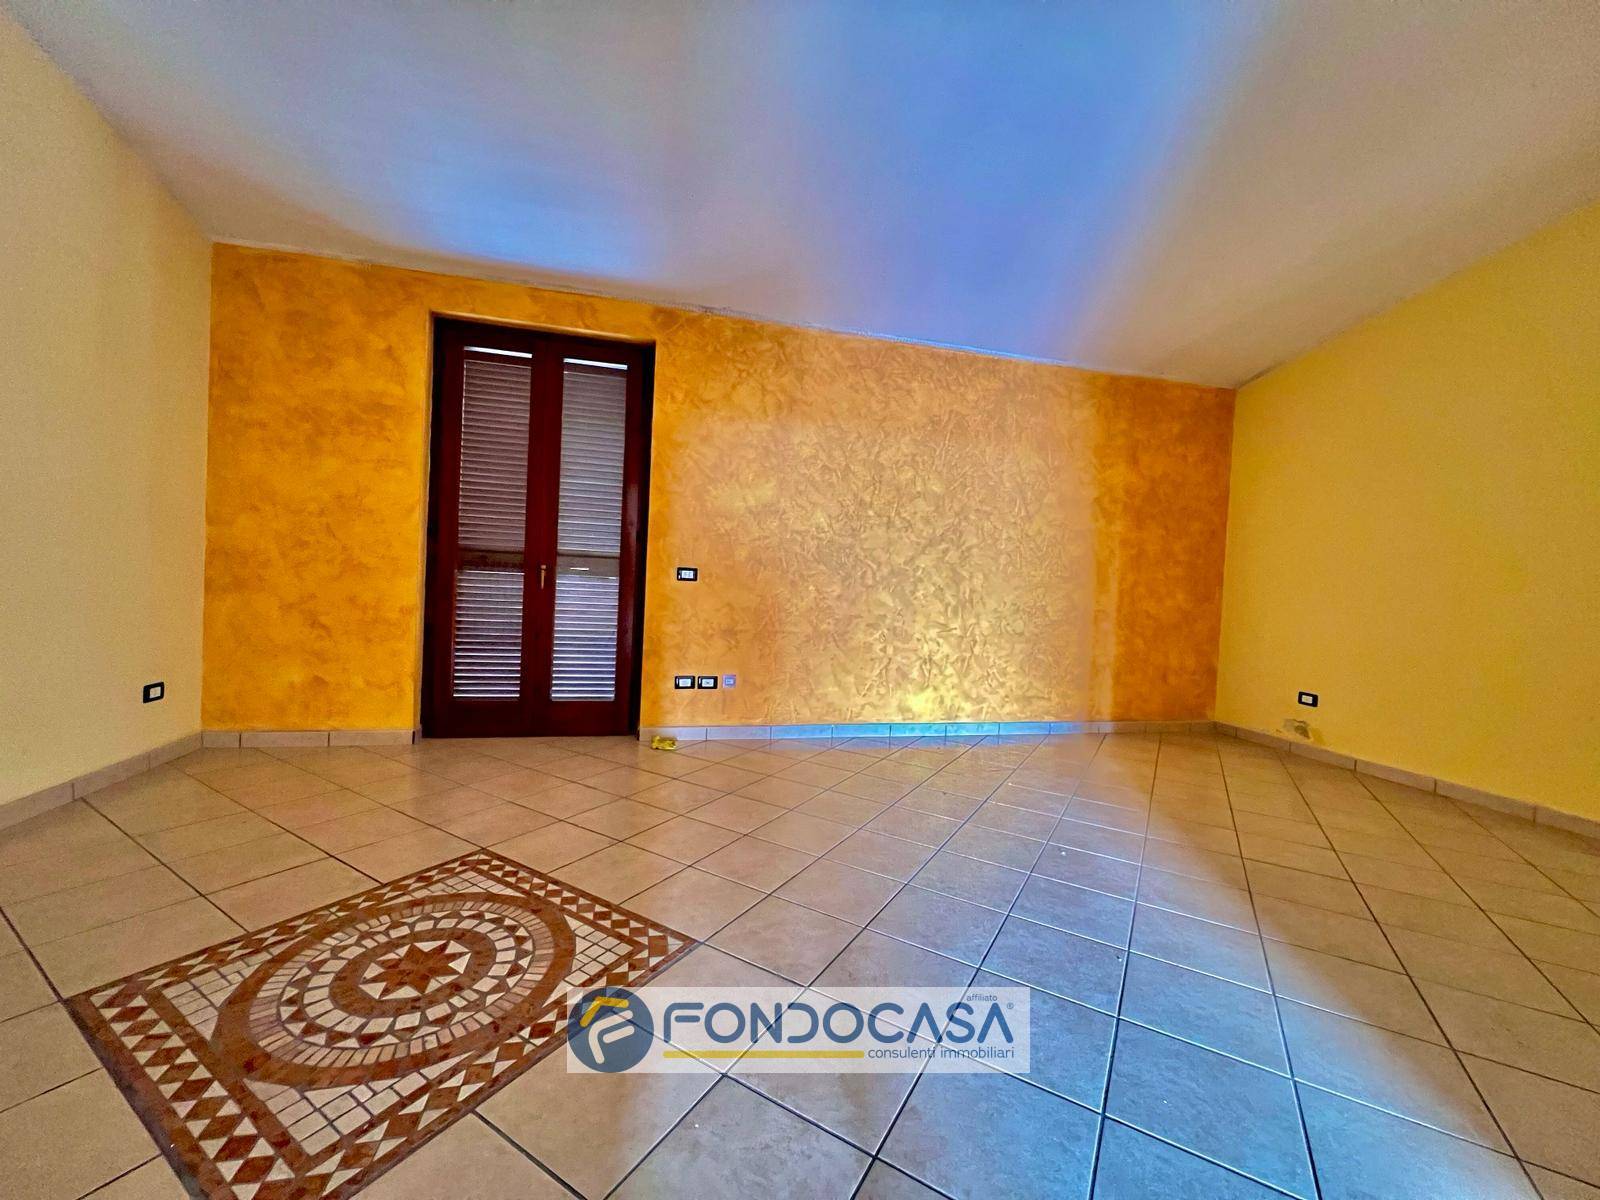 Appartamento in vendita a Trentola-Ducenta, 5 locali, prezzo € 139.000 | PortaleAgenzieImmobiliari.it